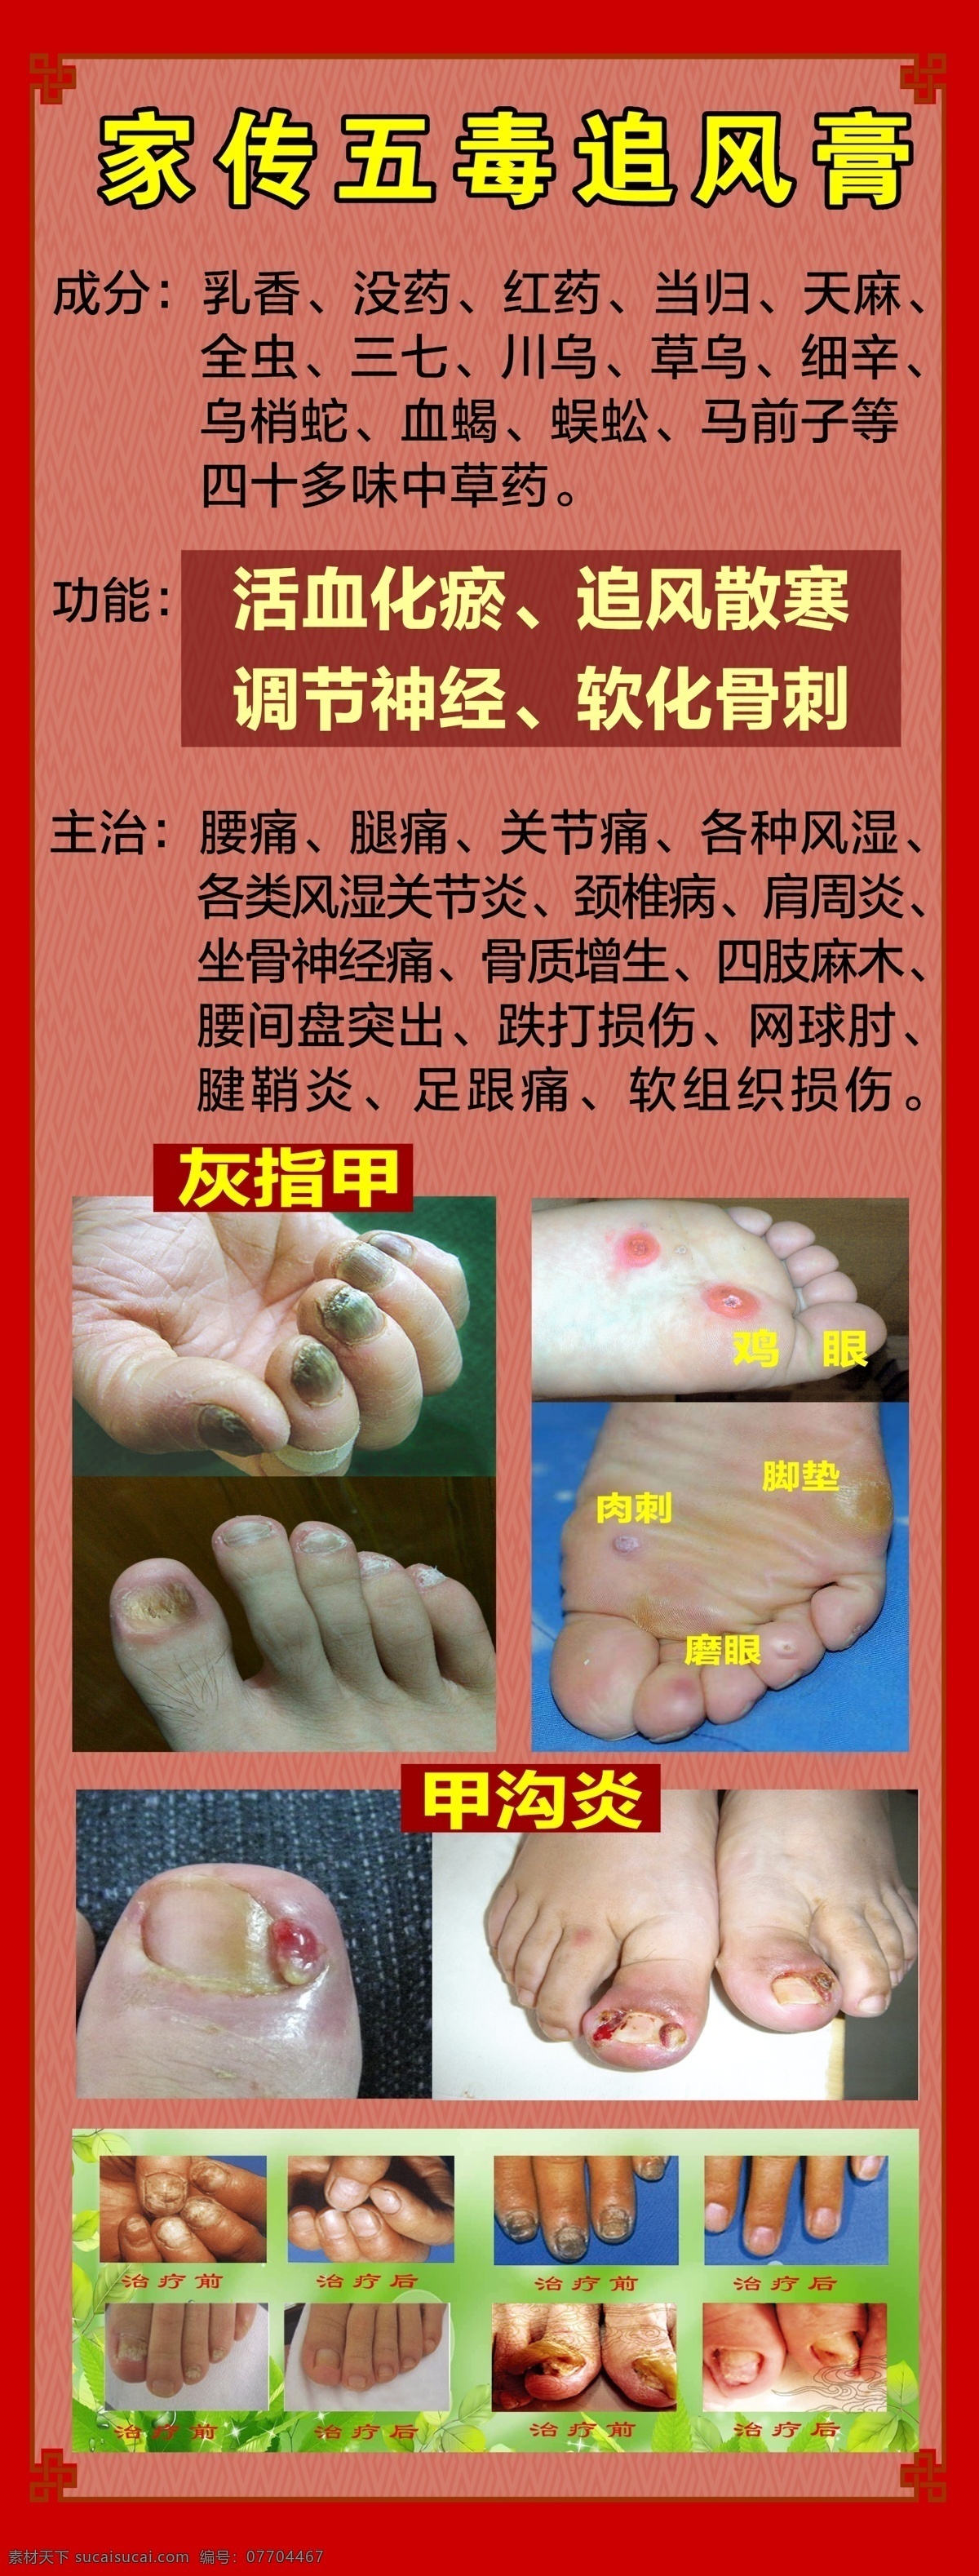 灰指甲治疗 灰指甲 治疗灰指甲 展架 灰指甲图片 甲沟炎 脚 鸡眼 展板模板